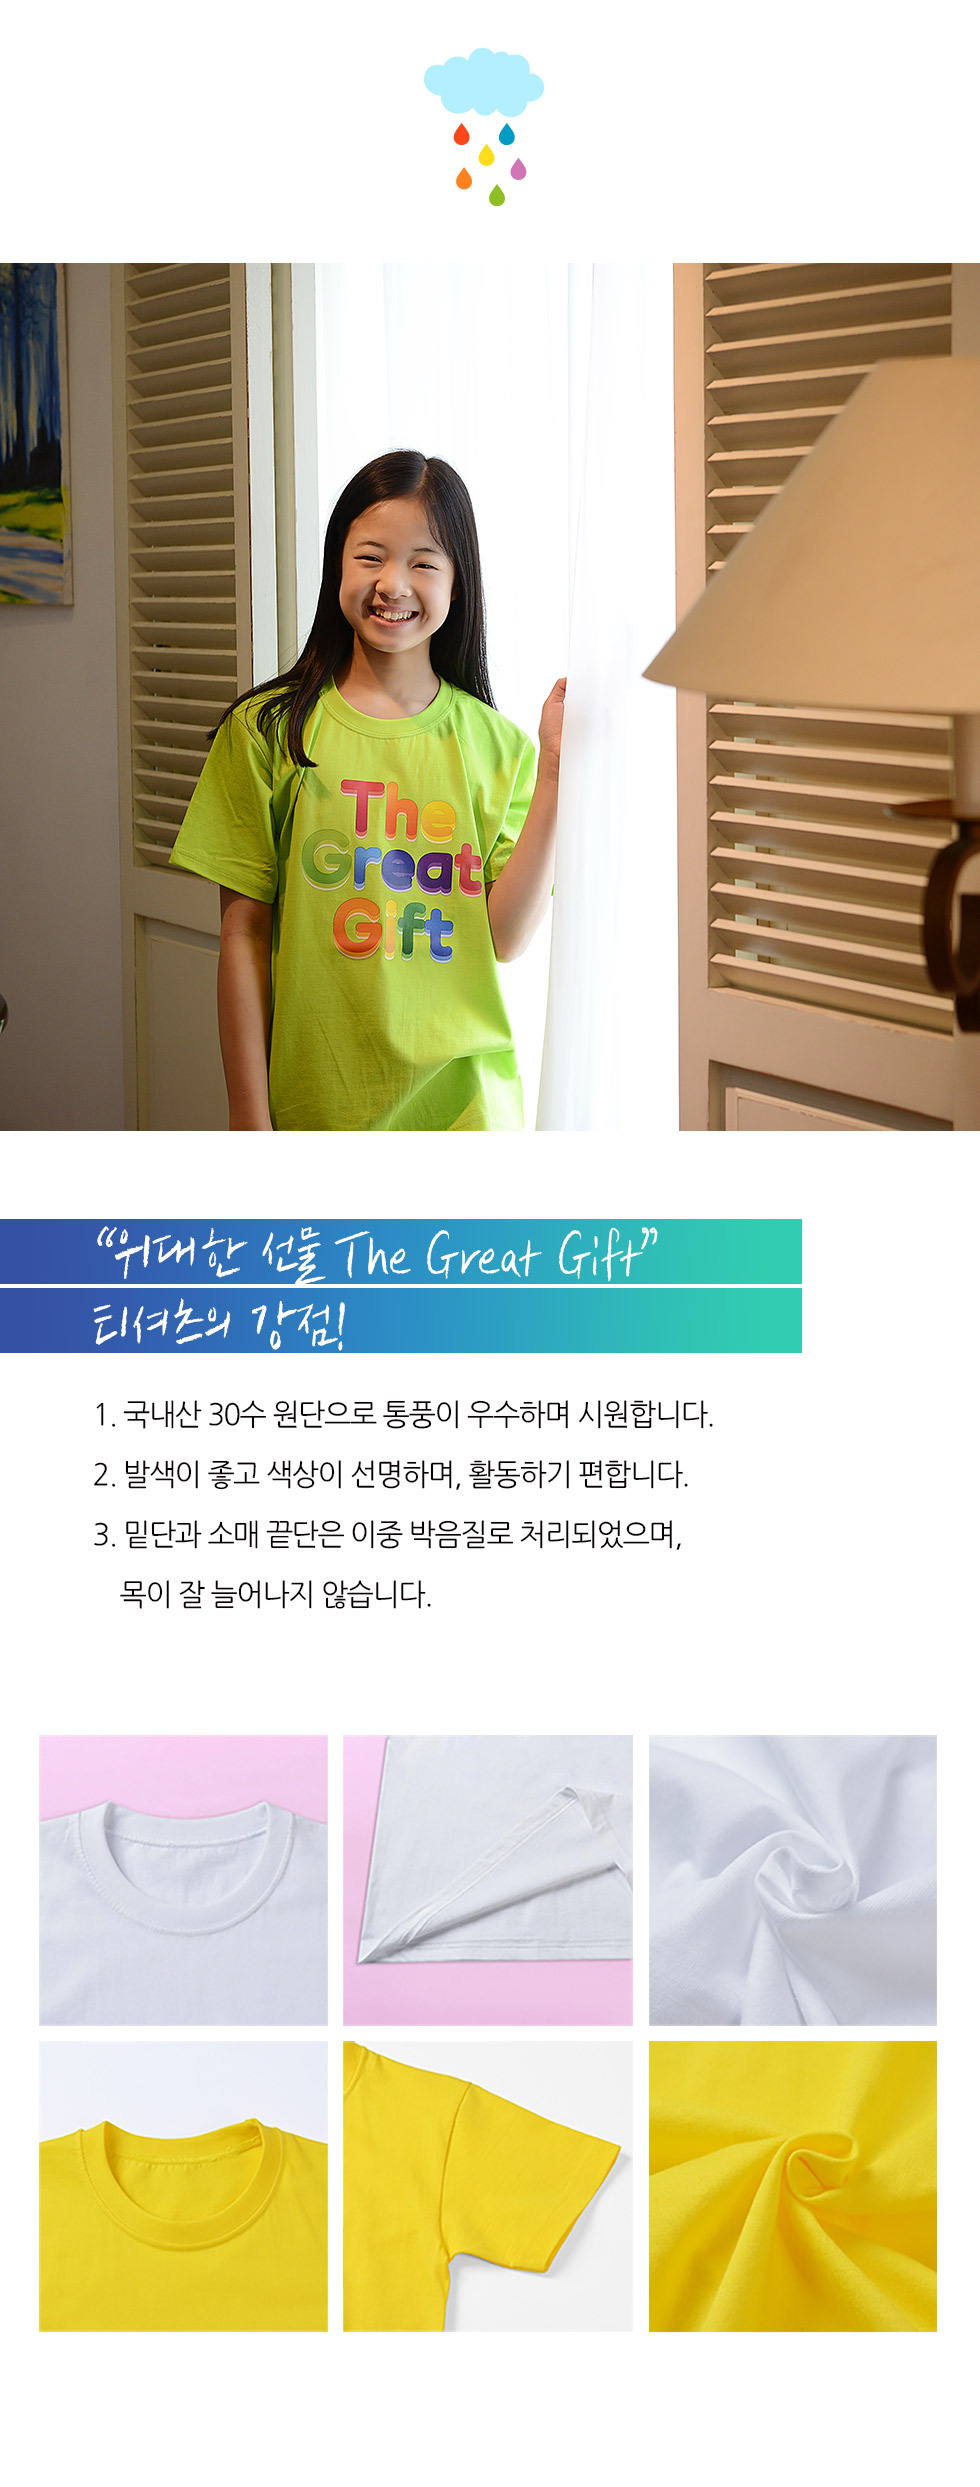 교회 단체티셔츠 위대한선물 - 무지개 (The Great Gift) - 아동티셔츠(예장 합동 교단 여름성경학교 주제티셔츠 - 위대한선물) 